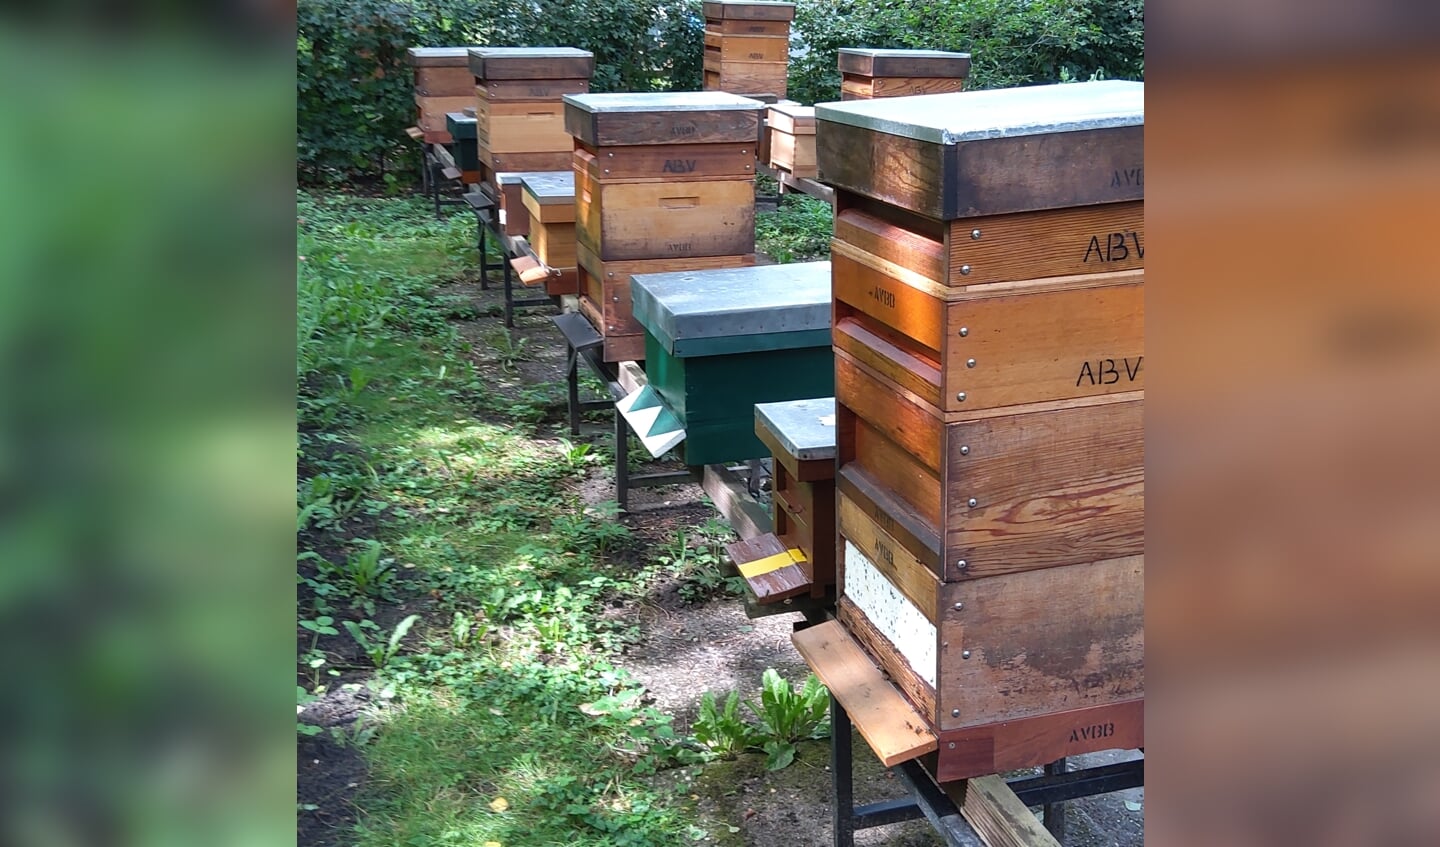 Imkers staan klaar om van alles over het volkstuinpark en bijen te vertellen 